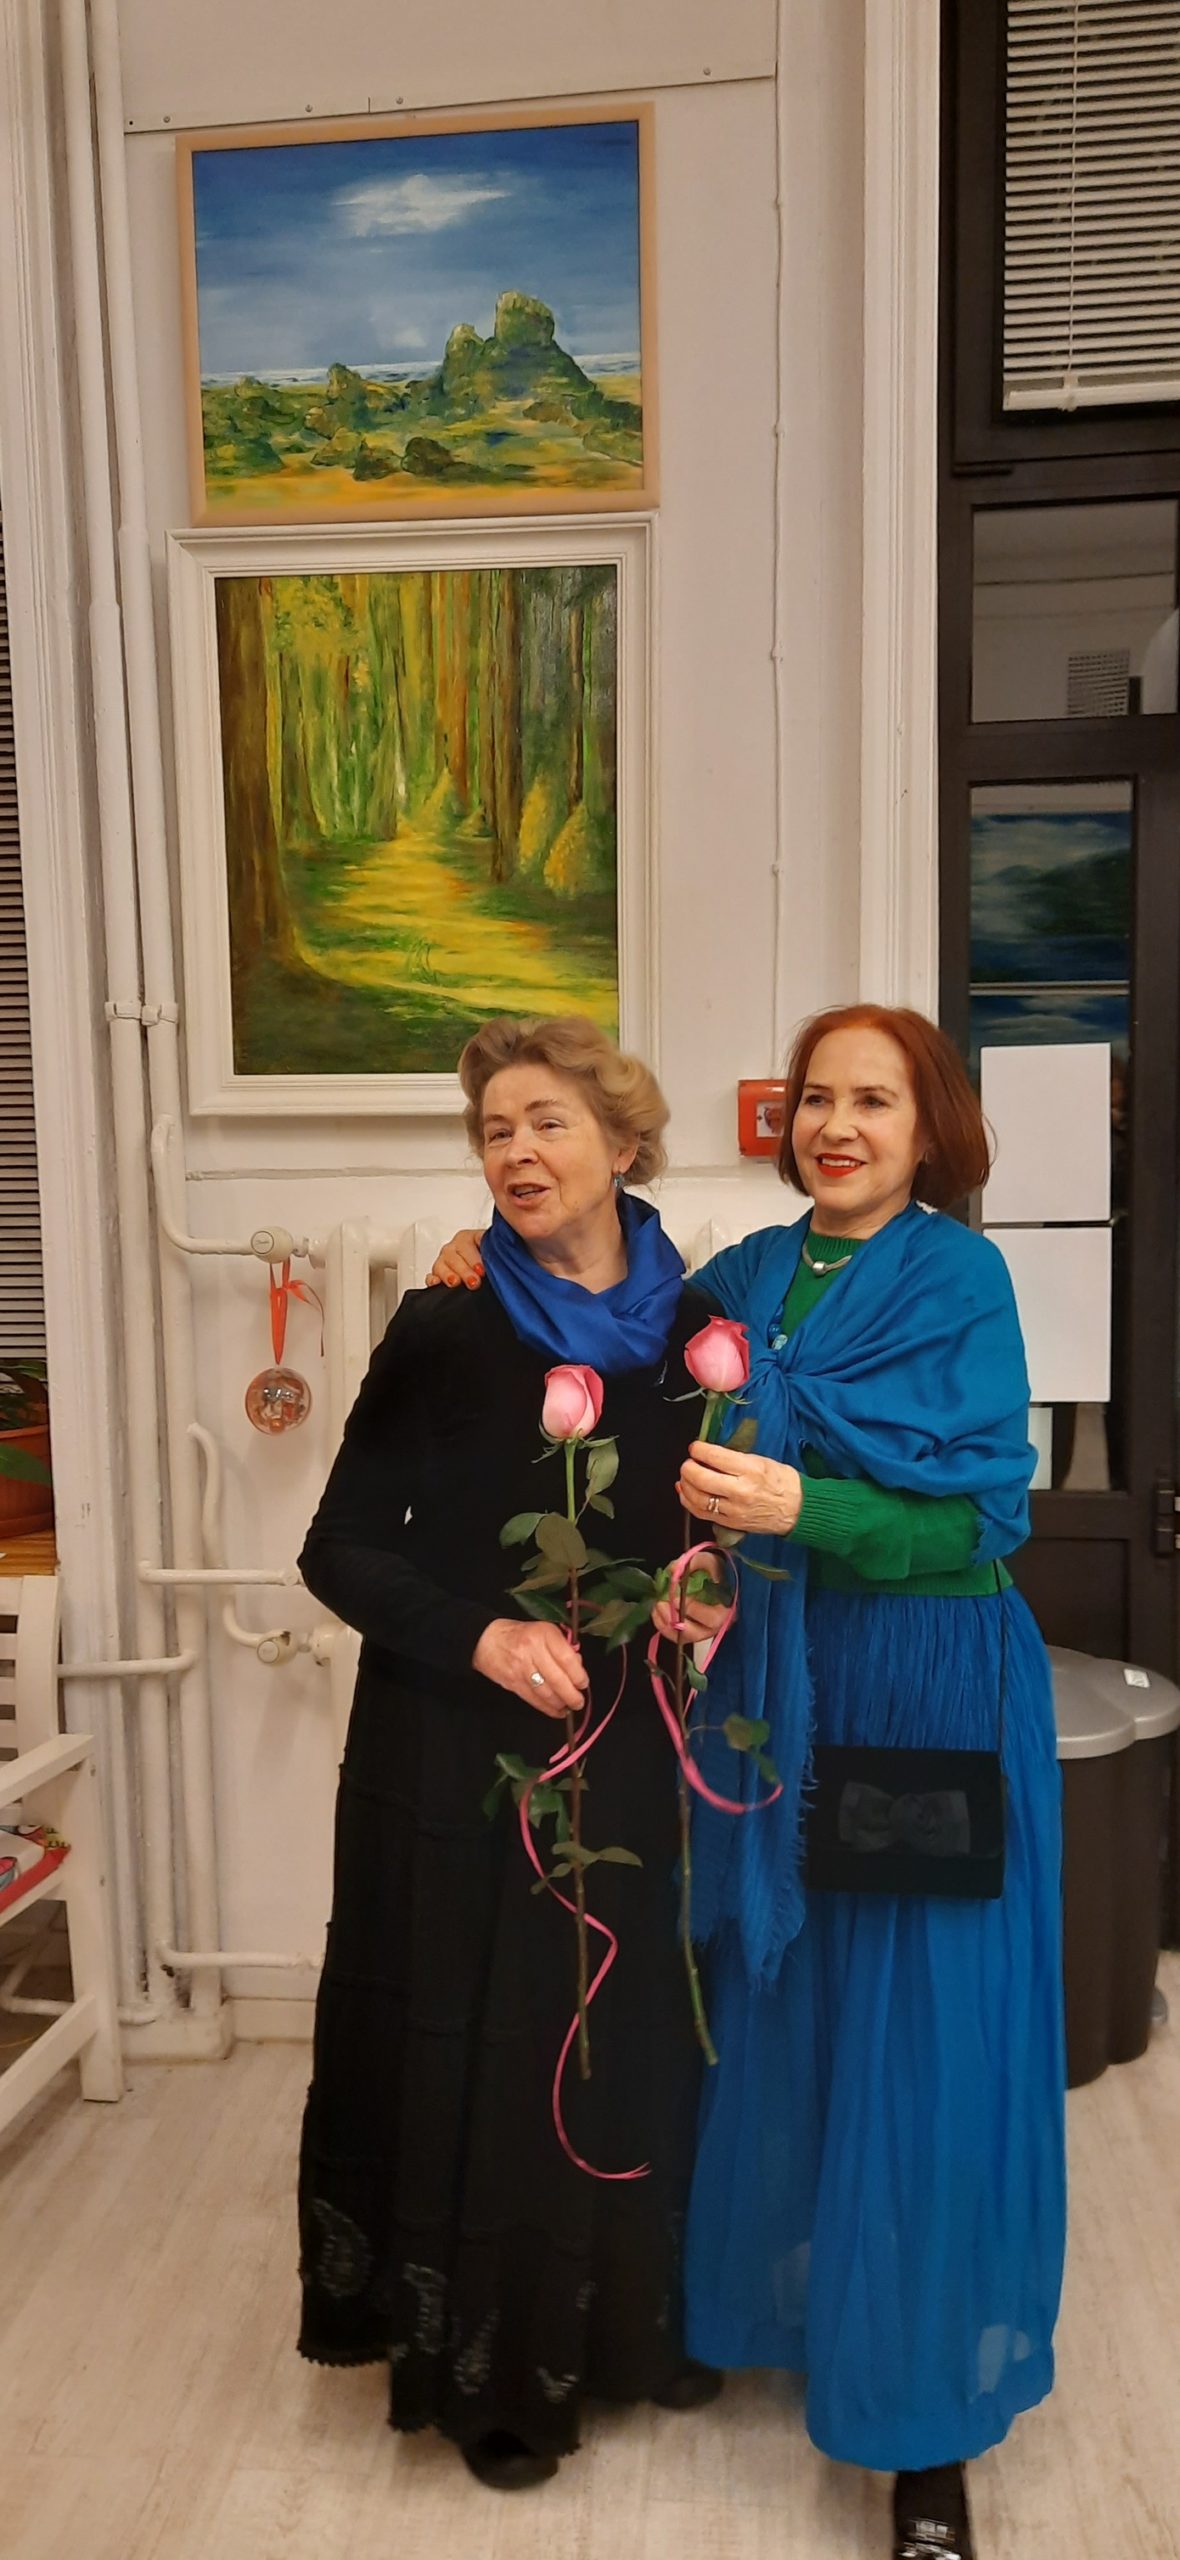 Zdjęcie przedstawia dwie uśmiechnięte kobiety, każda z kwiatem róży. W tle na białej ścianie wiszą obrazy olejne z pejzażami.